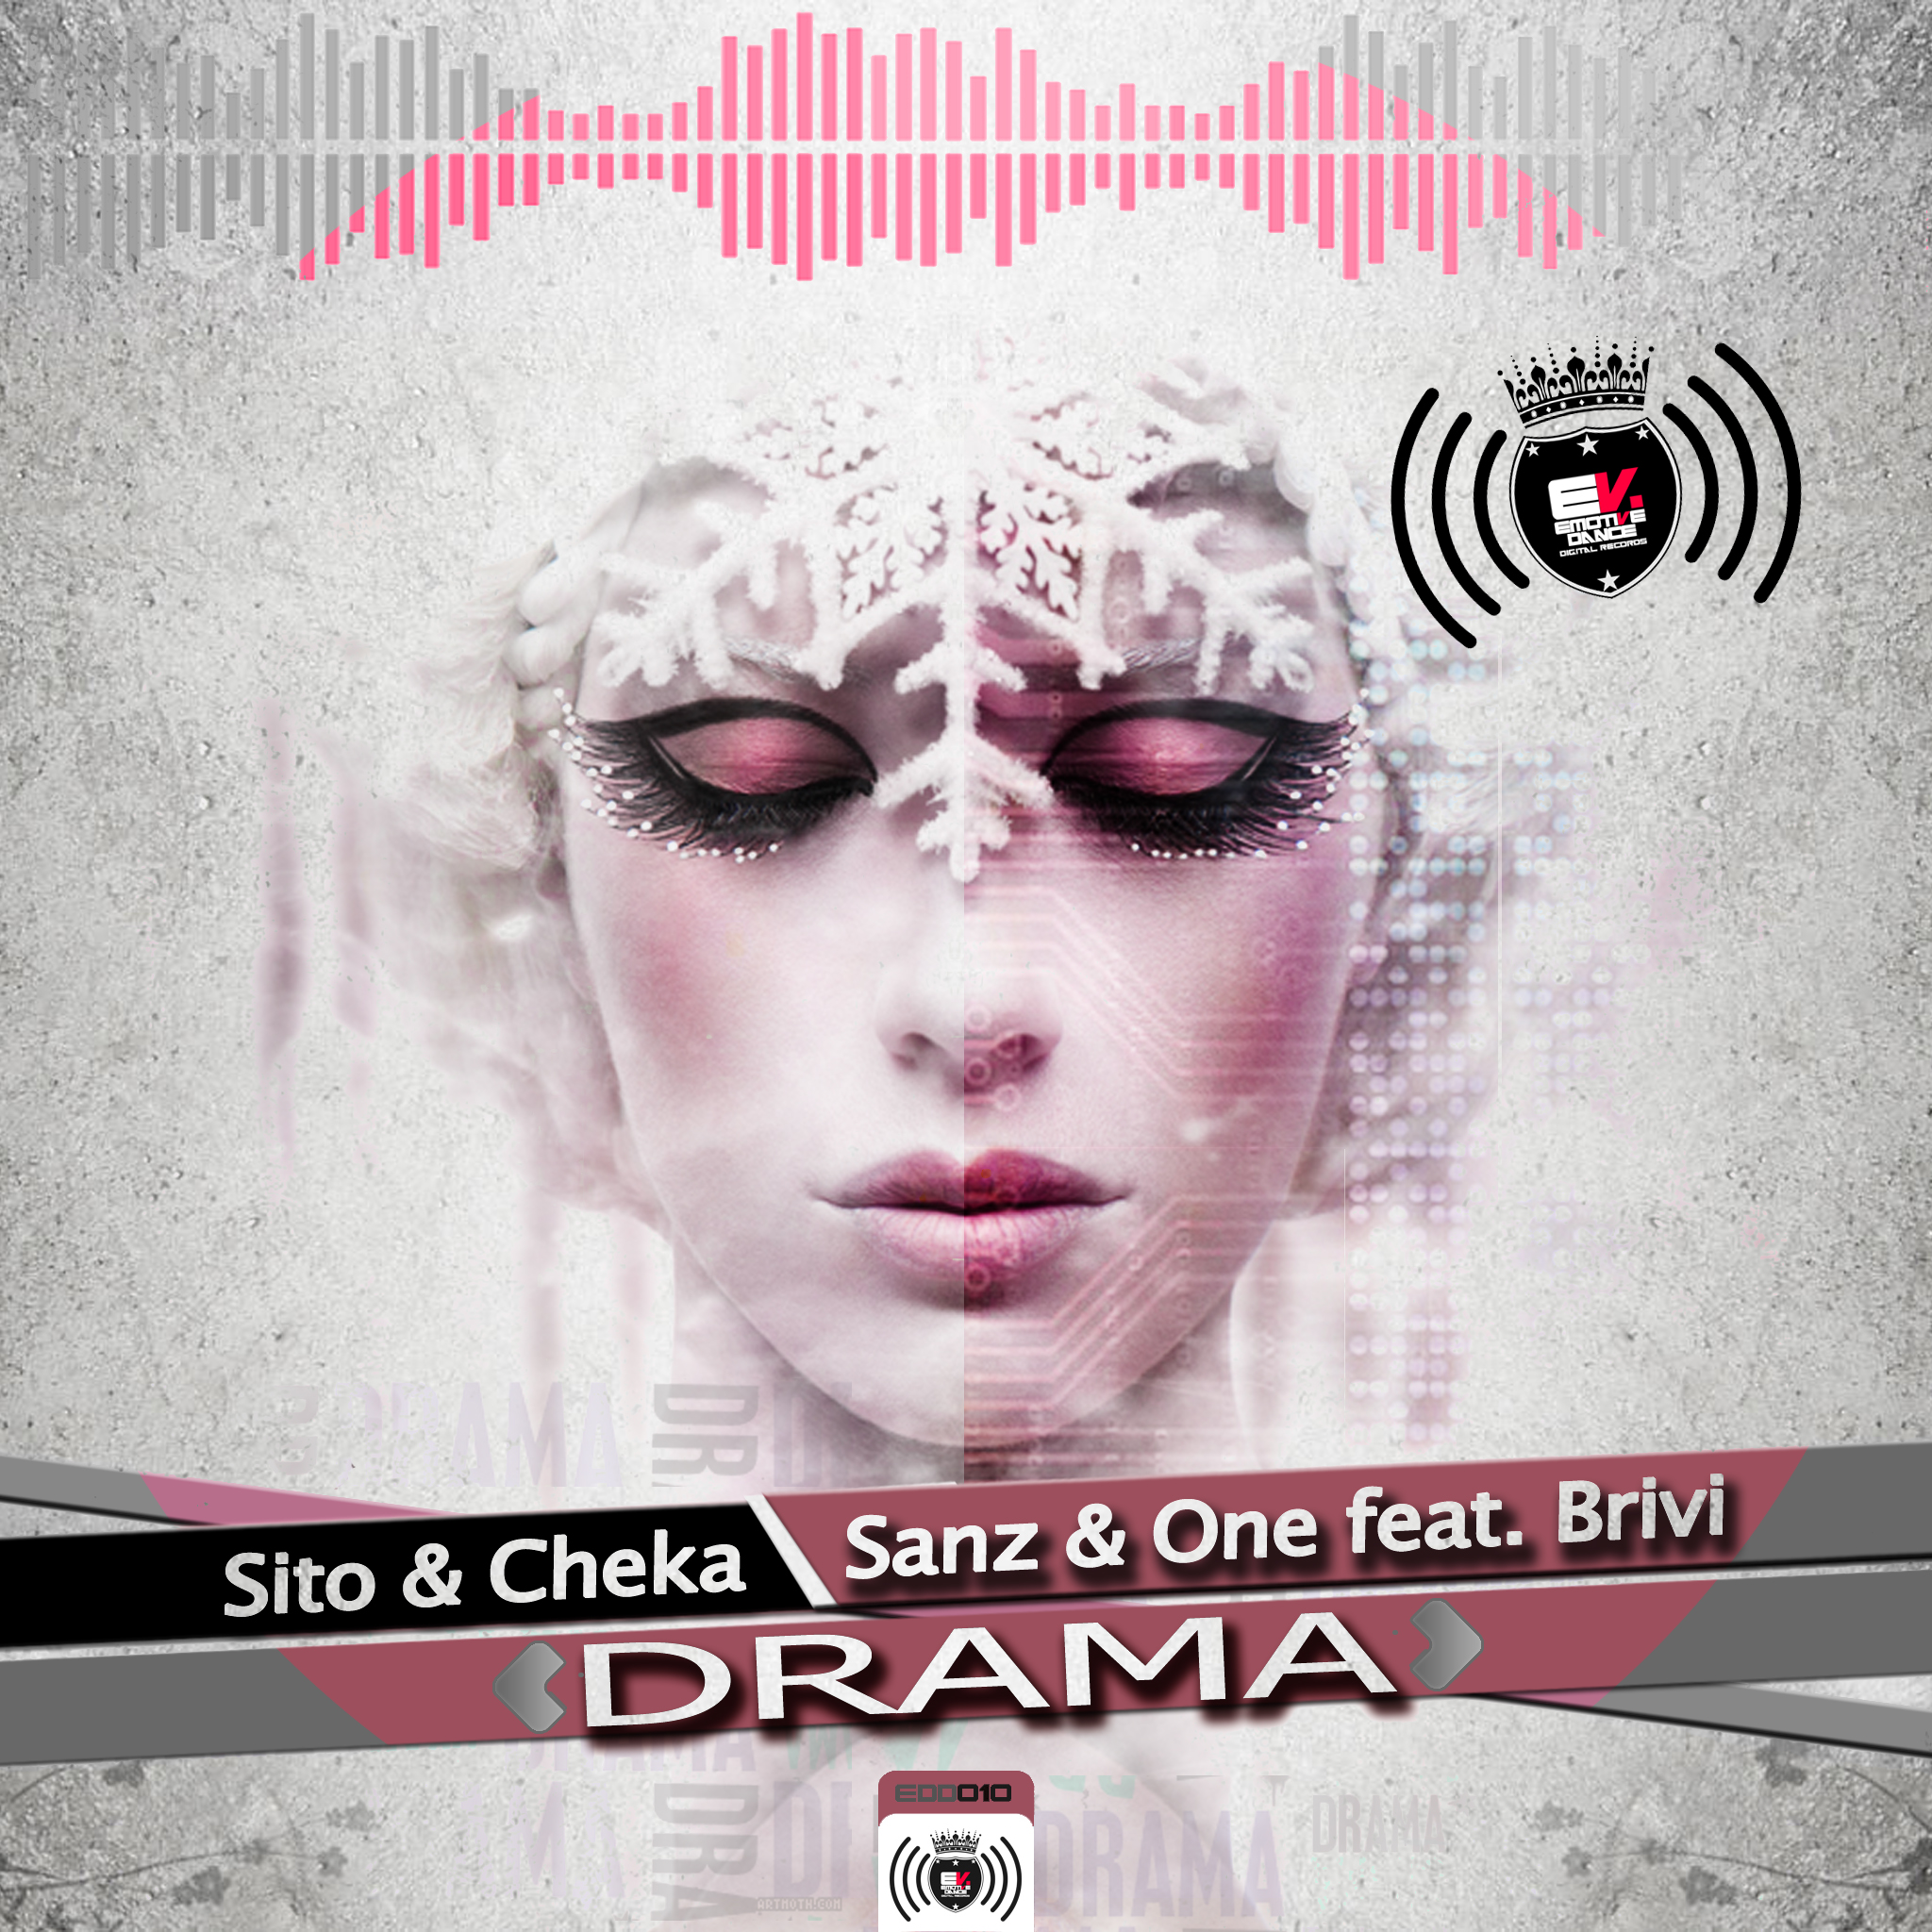 EDD 010: Sito & Cheka Vs Sanz & One Feat. Brivi - Drama Artworks-000034908139-jz5s0c-original